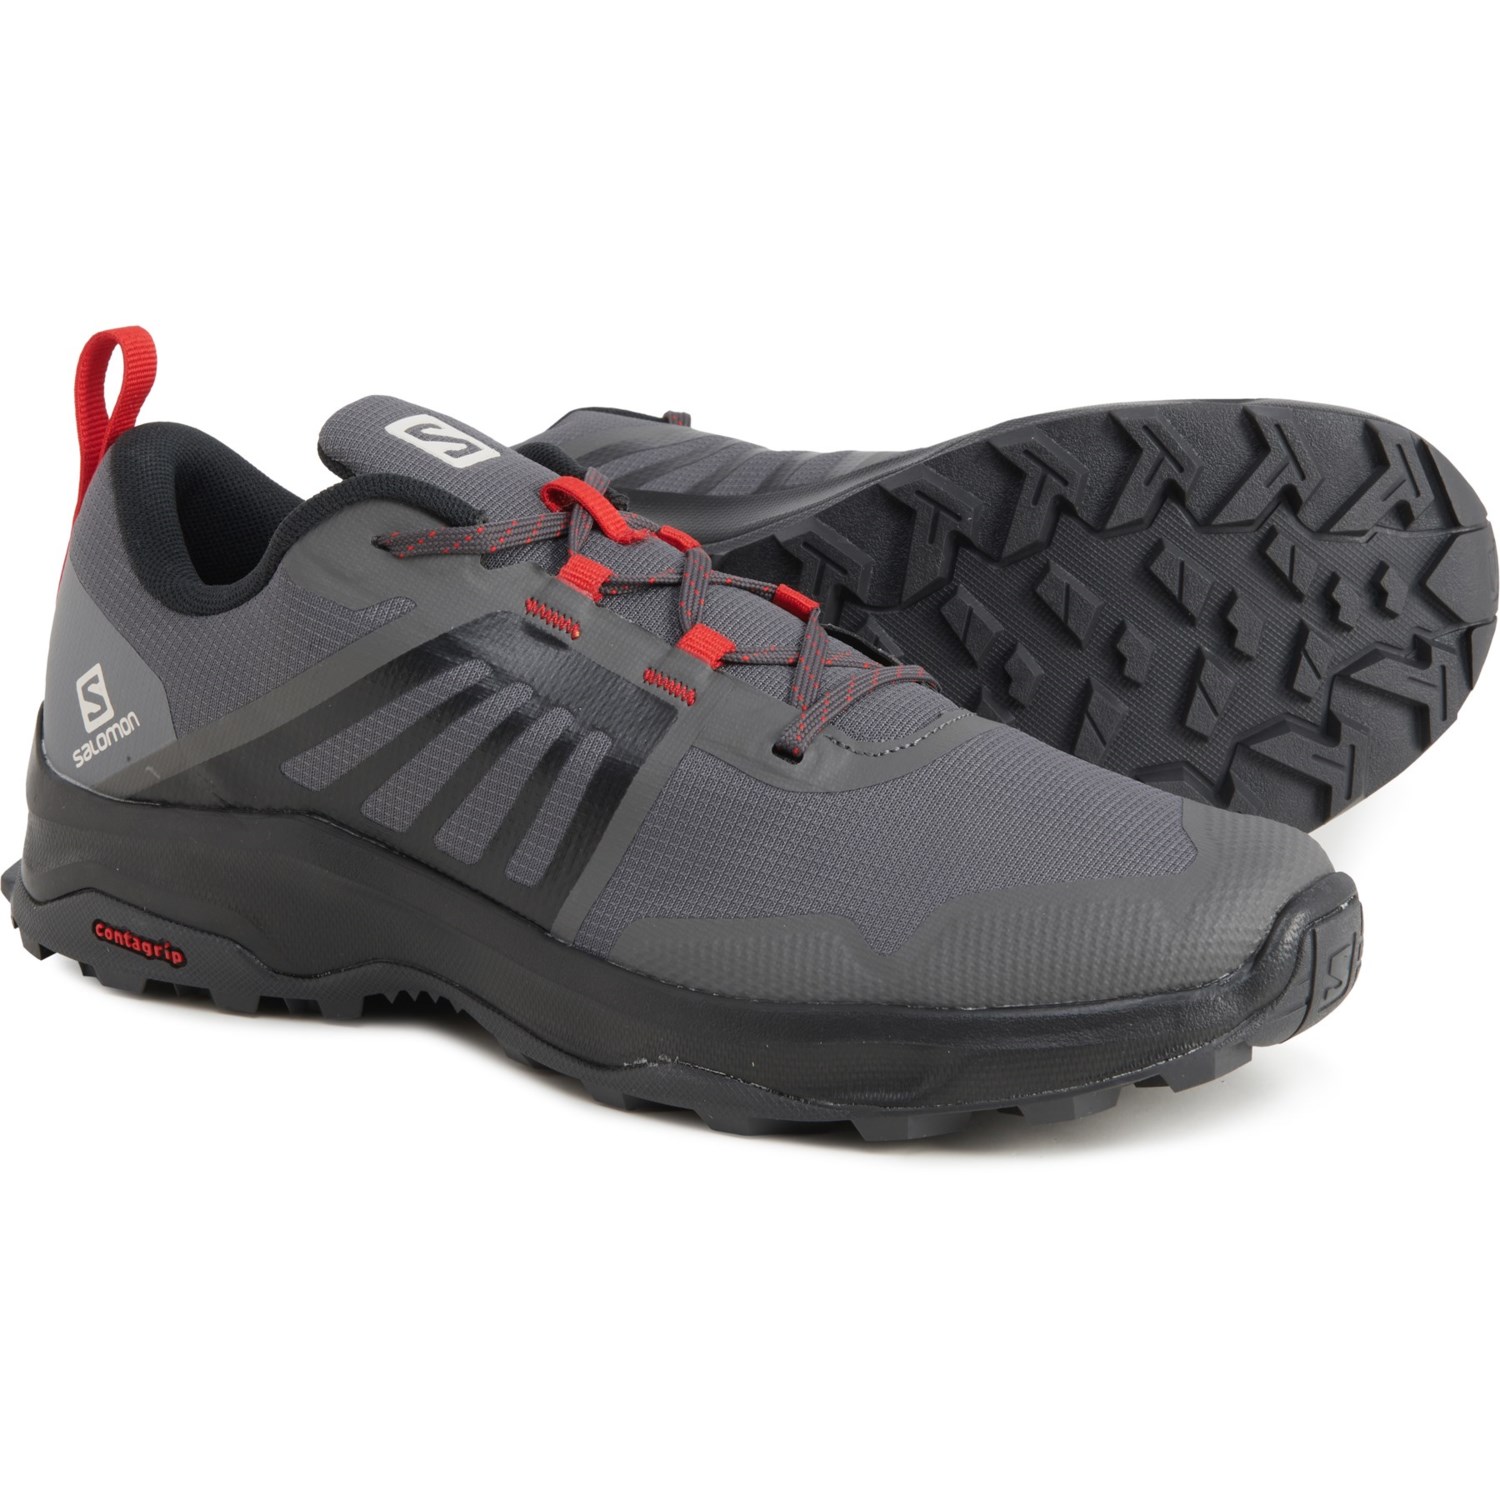 periodieke veiligheid De waarheid vertellen Salomon X-Render Trail Running Shoes (For Men) - Save 50%